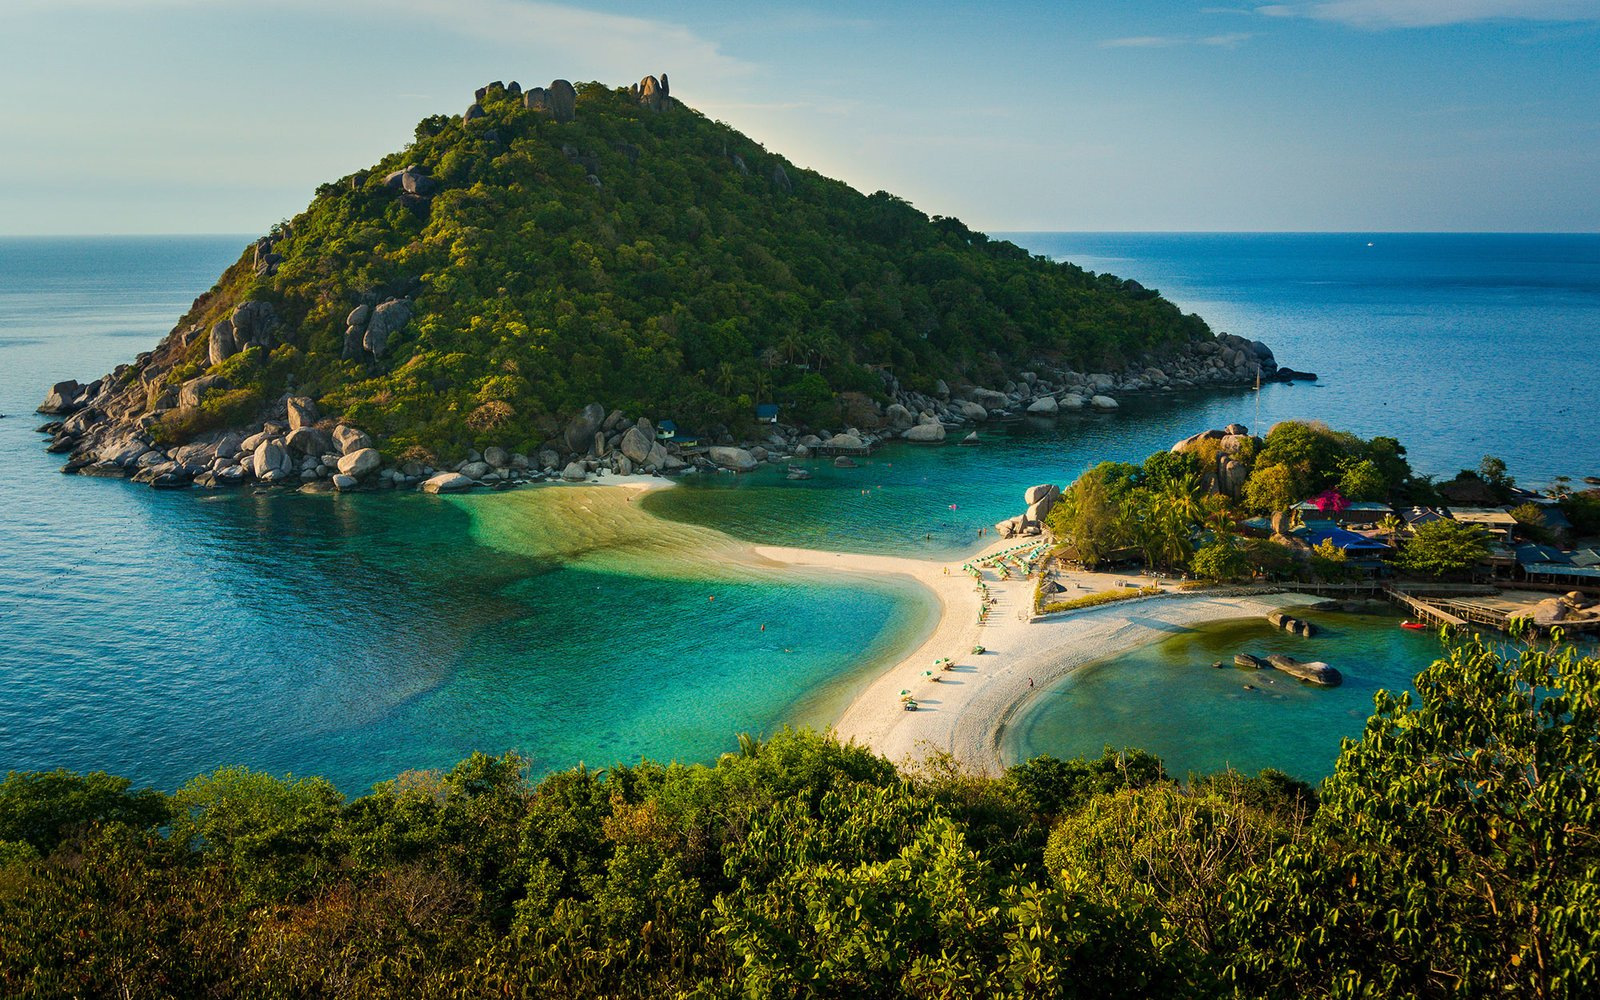 Острова тайланда - какой остров лучший для отдыха? экзотик